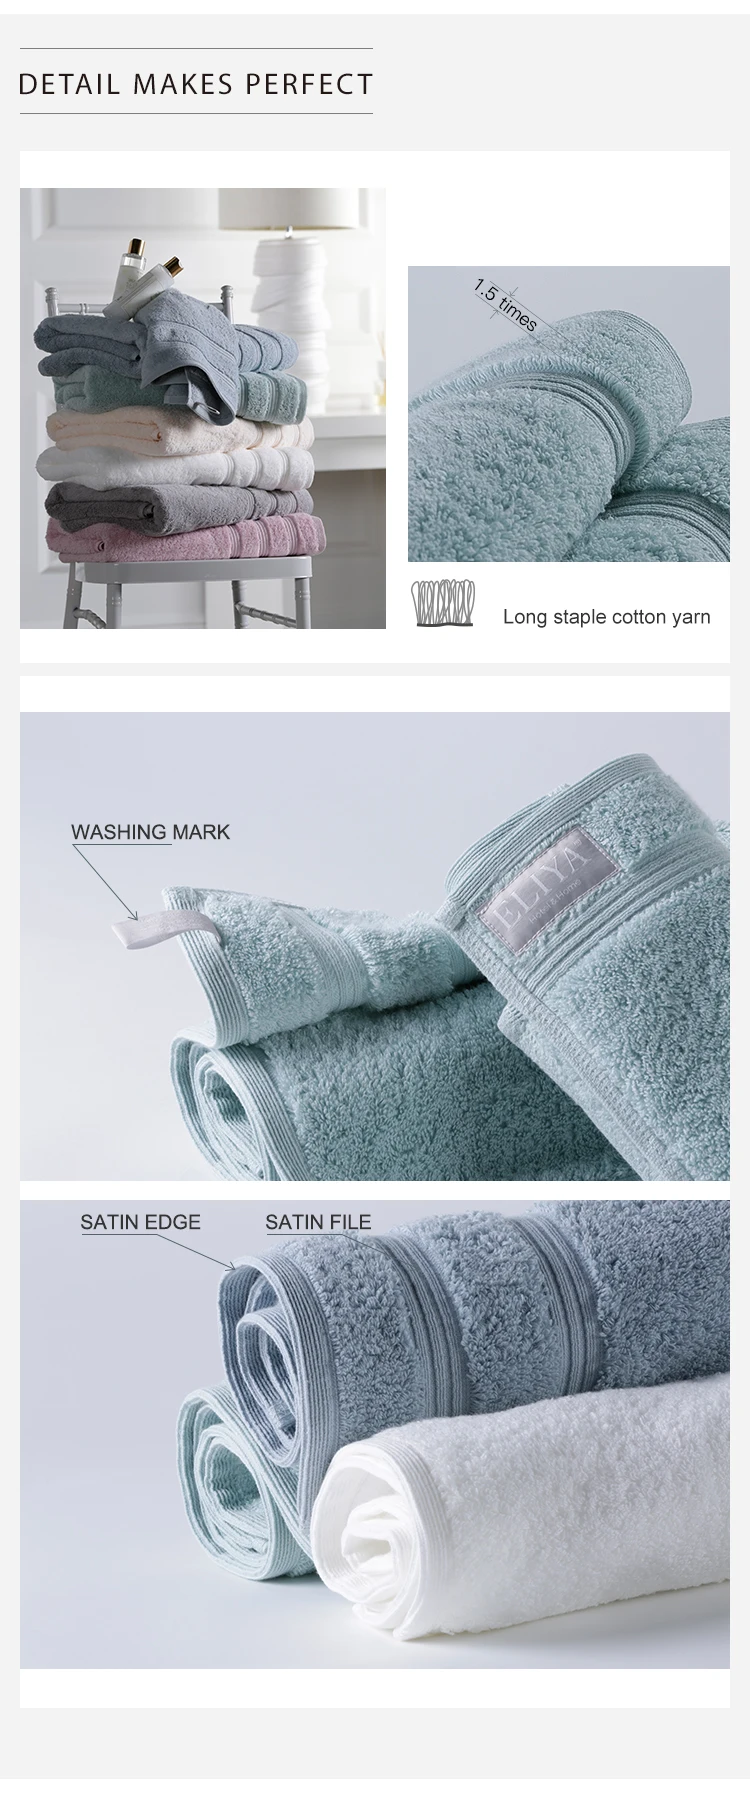 New Dobby Border Gesichtstuch, 100% Cotton Luxury Design Towel